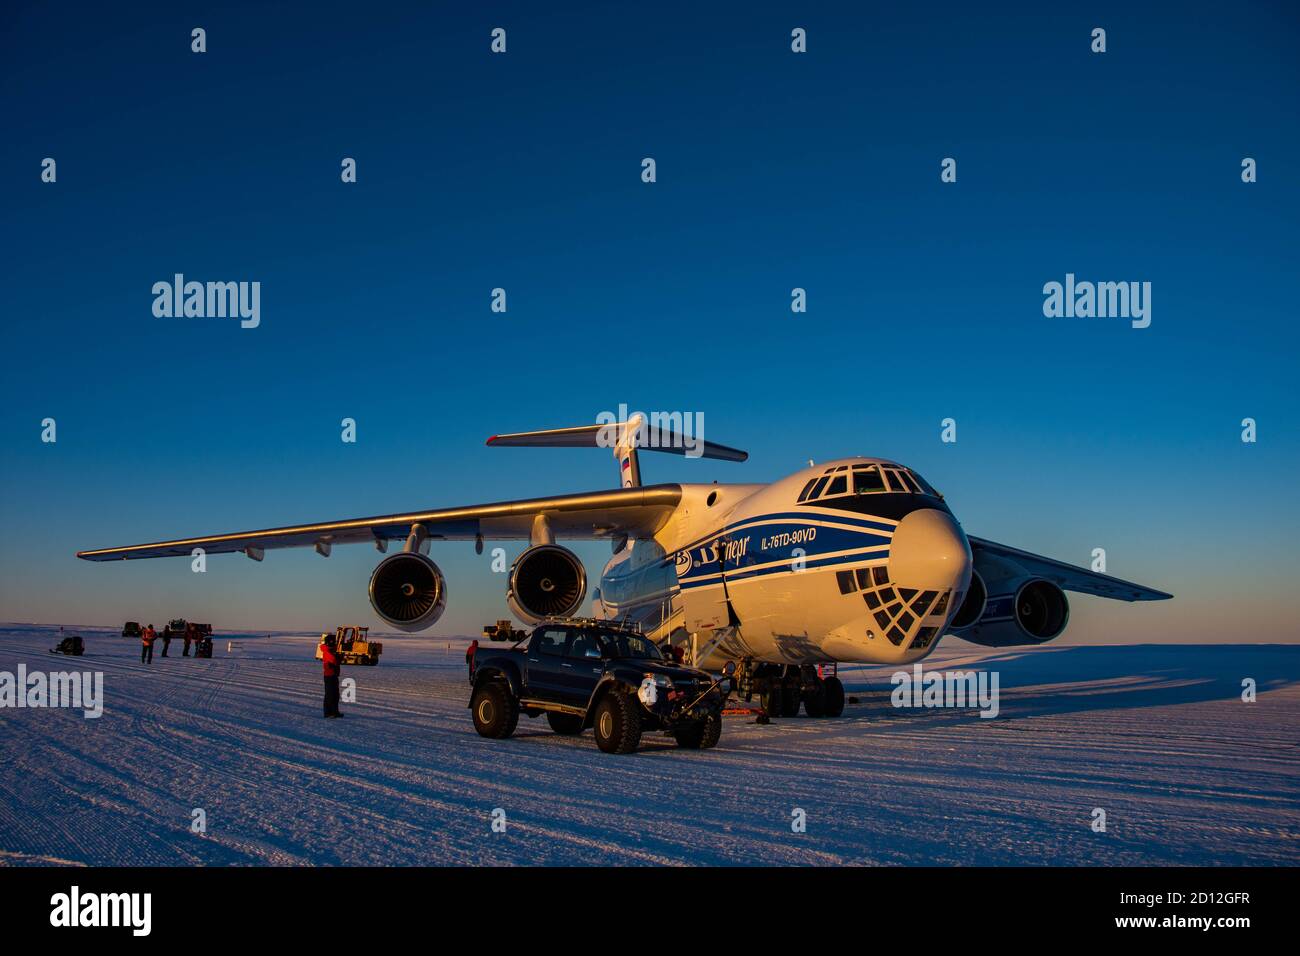 Antarctique, station Novolazarevskaya 23 avril 2020 : un avion de transport et de cargaison Volga-Dnepr il 76 est en cours de chargement, sur un champ de glace en Antarctique, dans la ta Banque D'Images